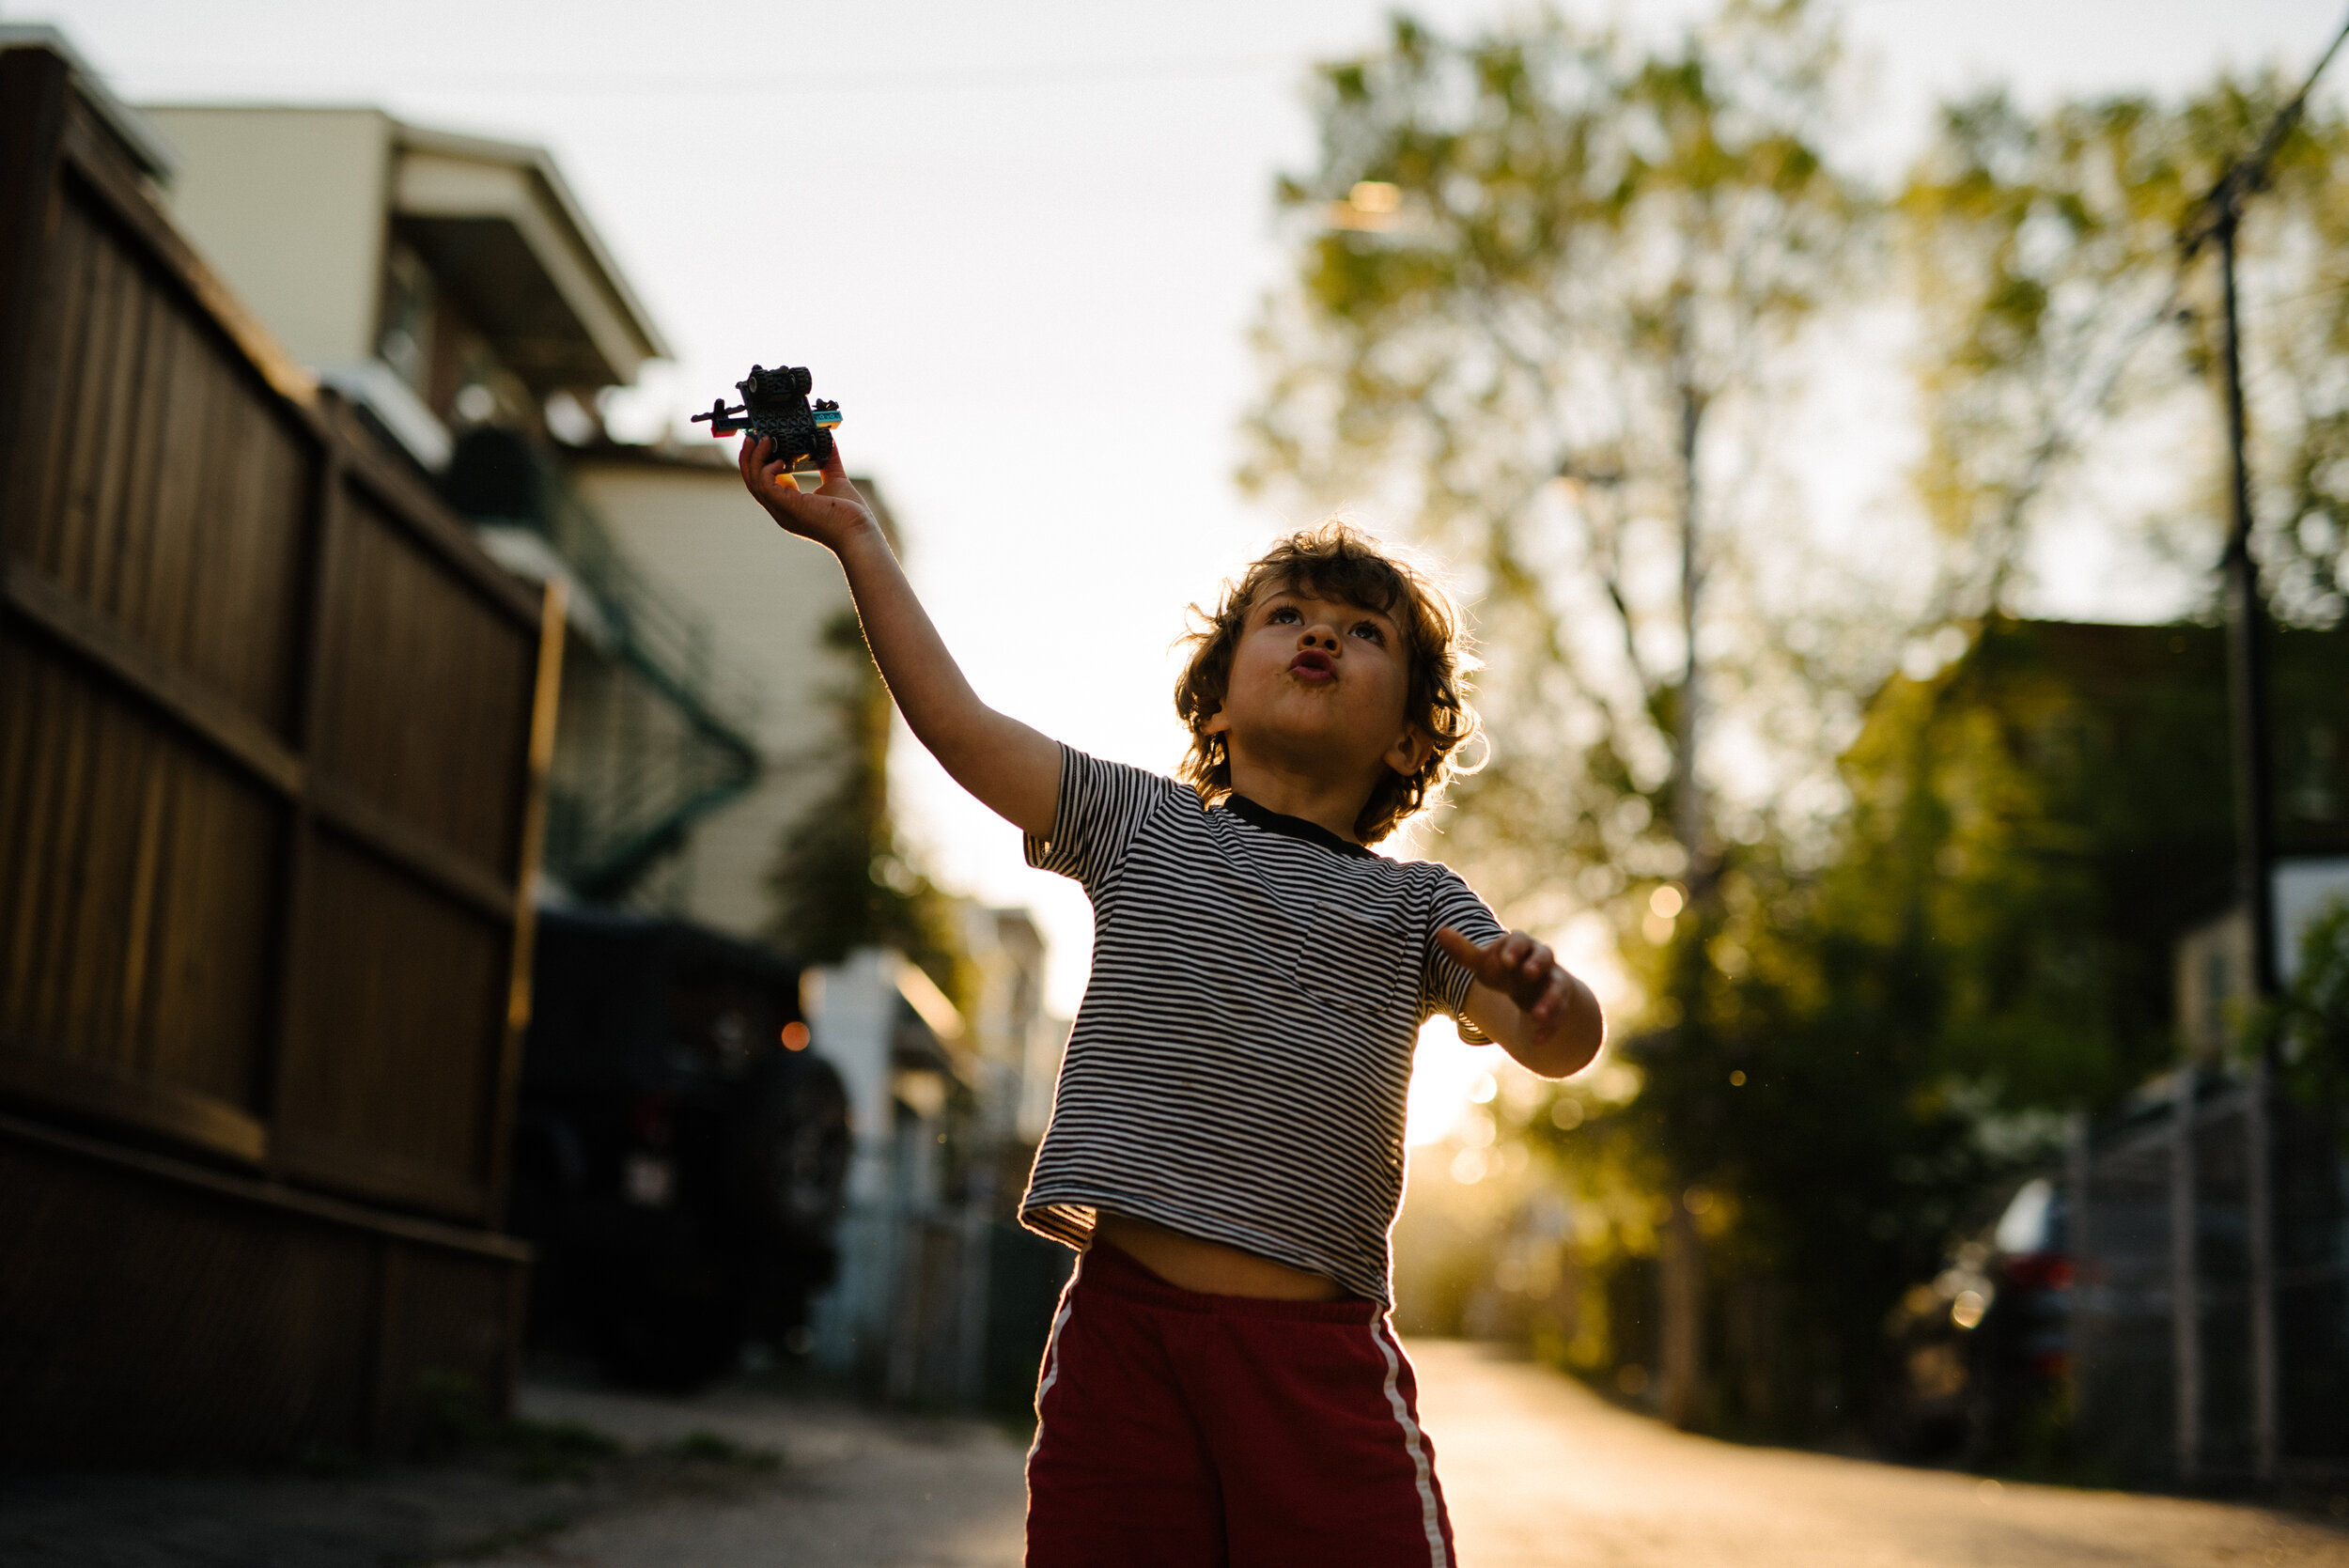 20200523photo-enfants-jouant-dans-ruelle-au-coucher-de-soleil-silhouettes-photographe-de-famille-lifestyle-documentaire-a-montreal-010.jpg